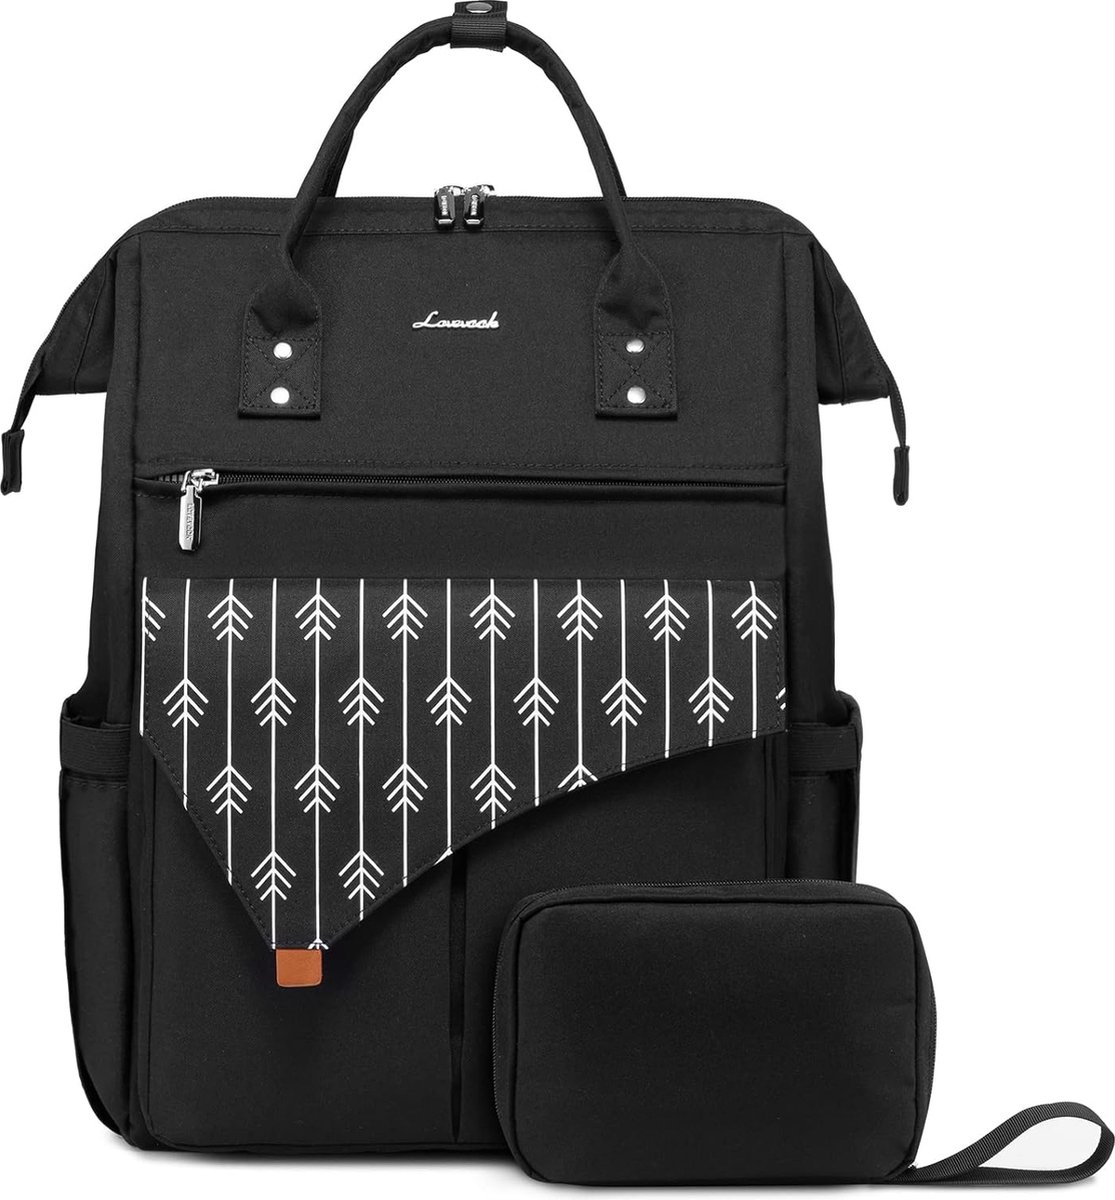 Laptoptas 15.6 inch 2-delig - Zwart patroon - Rugzak voor laptops - 41 x 30 x 15 cm - Rugtas voor school, werk, kantoor, reizen